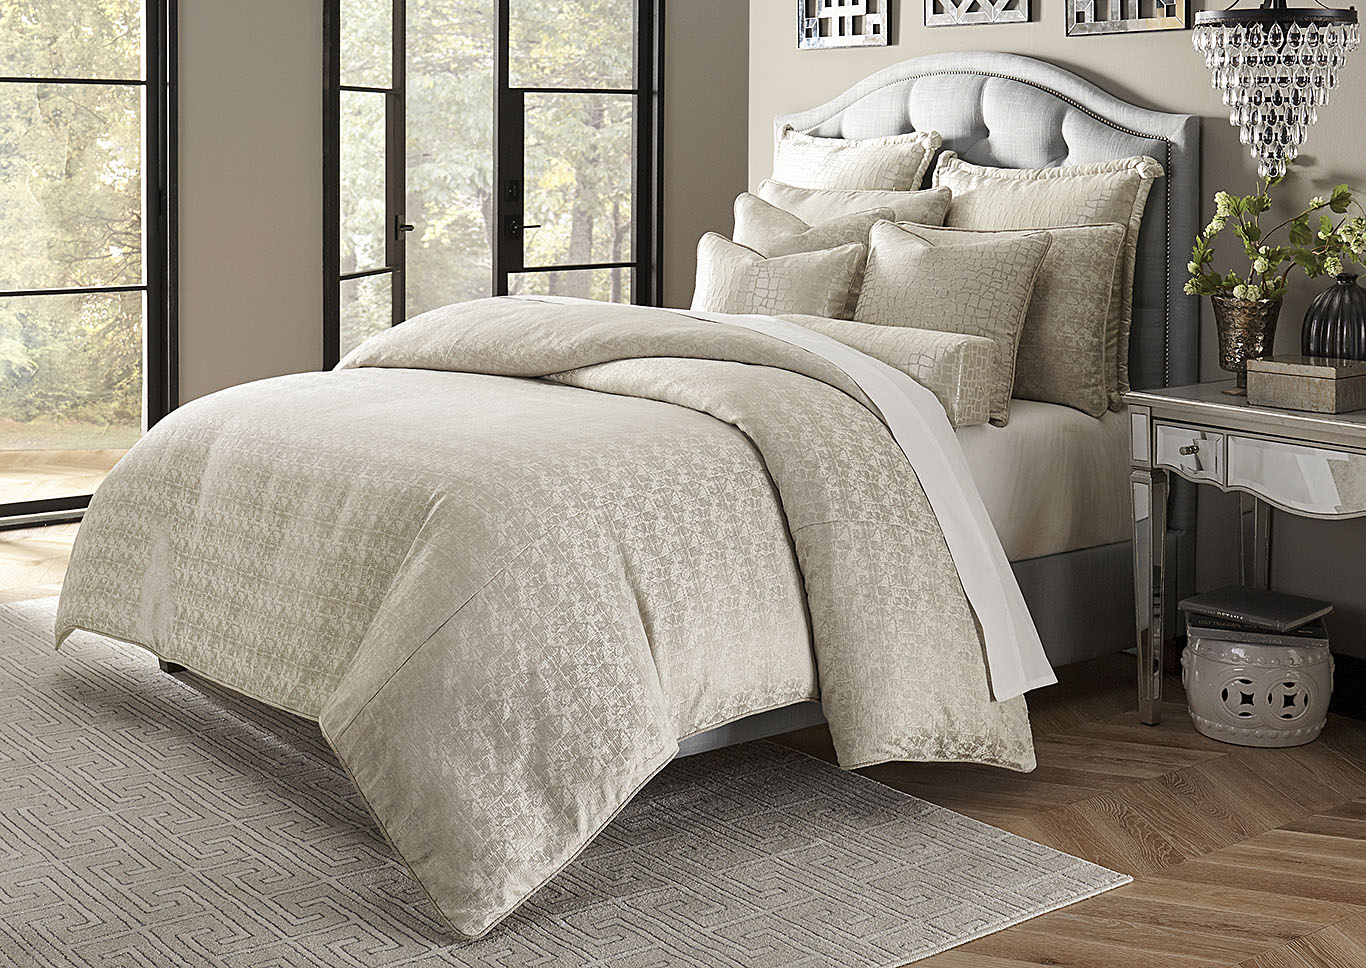 Carlyle 10 pc King Comforter Set Platinum,AICO